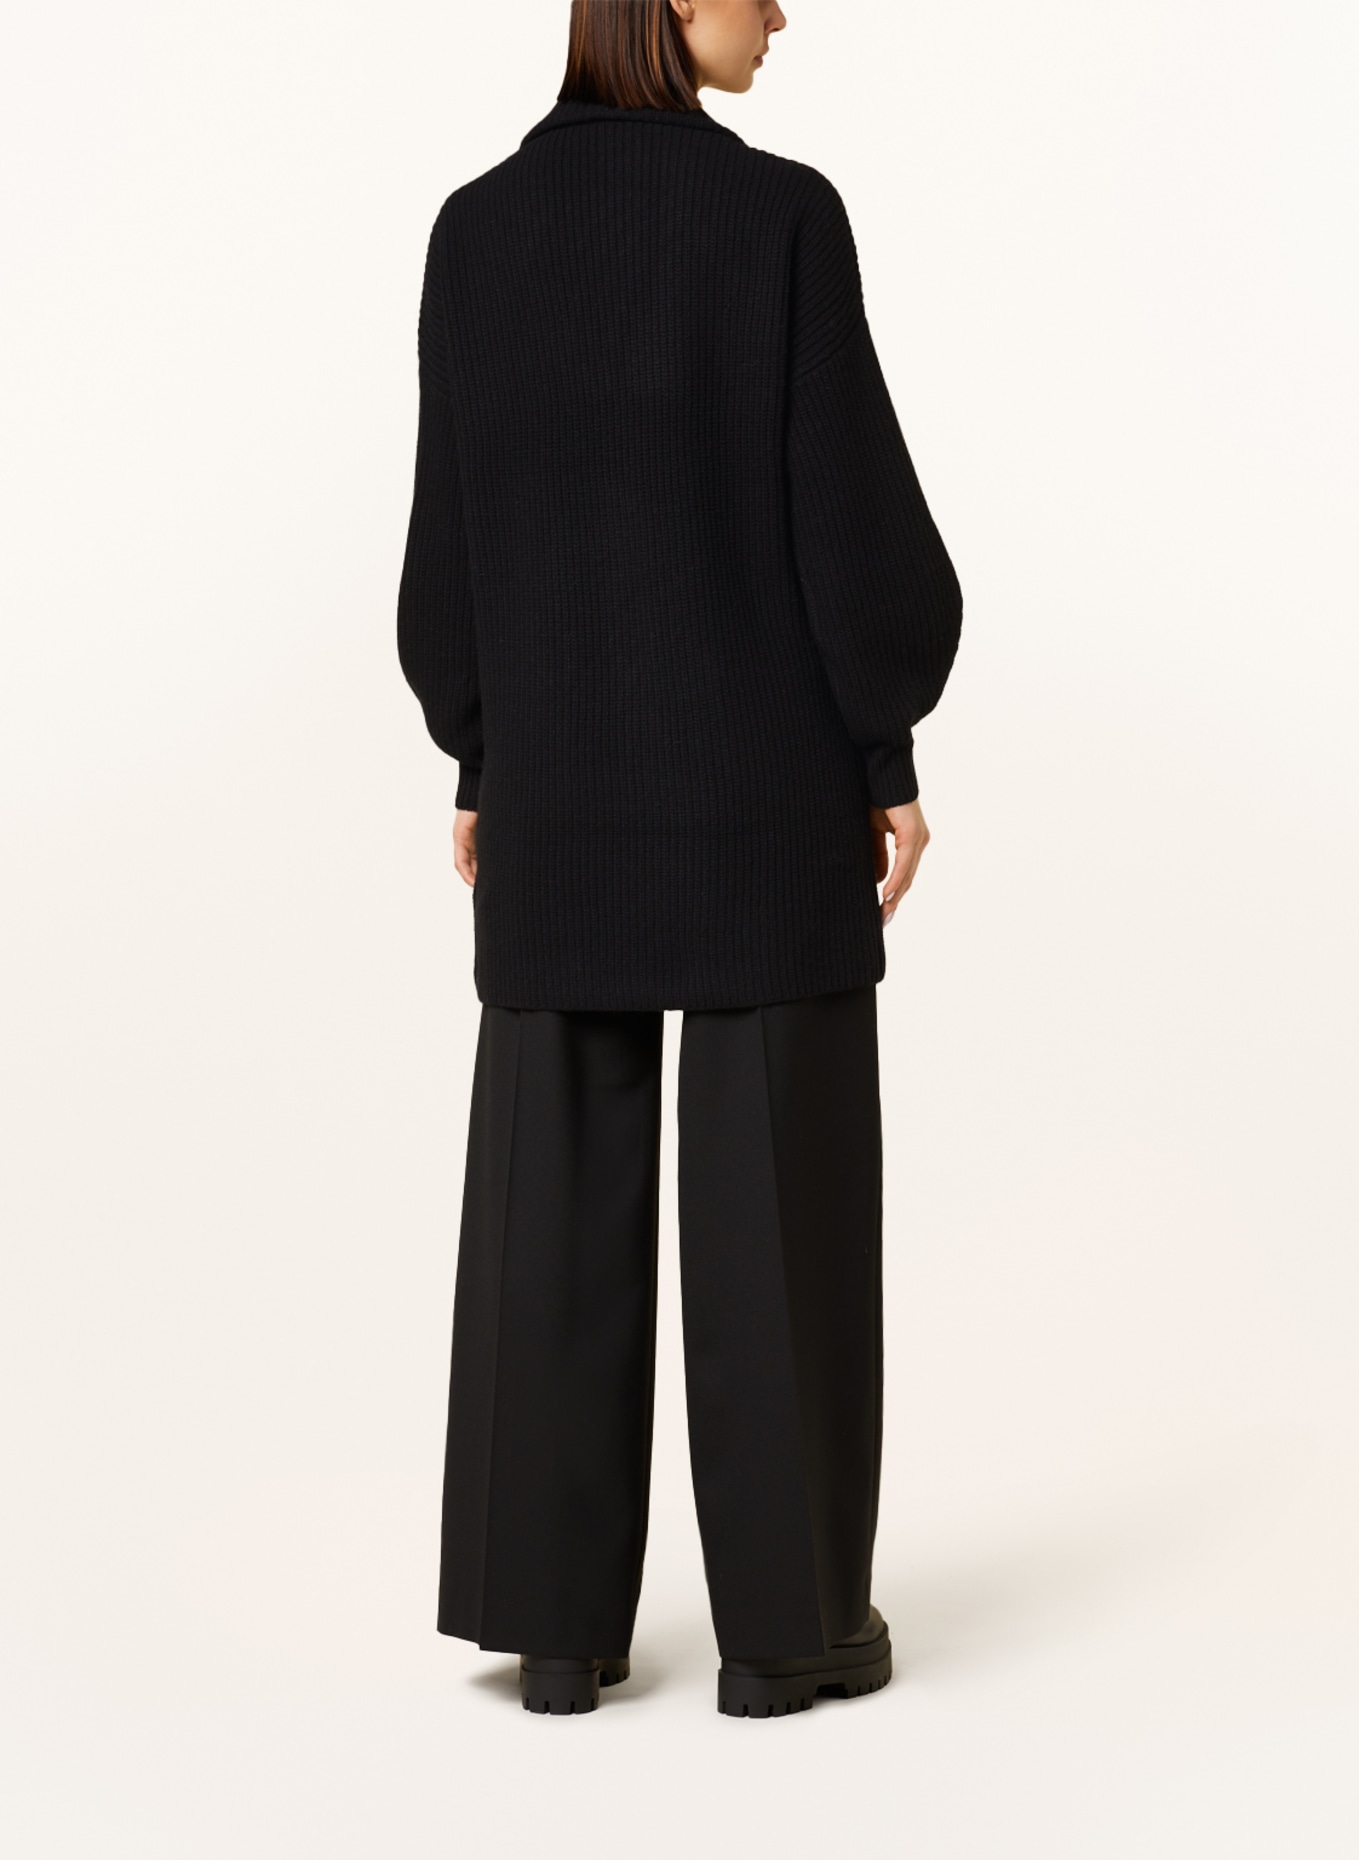 REPEAT Cardigan in merino wool, Color: BLACK (Image 3)